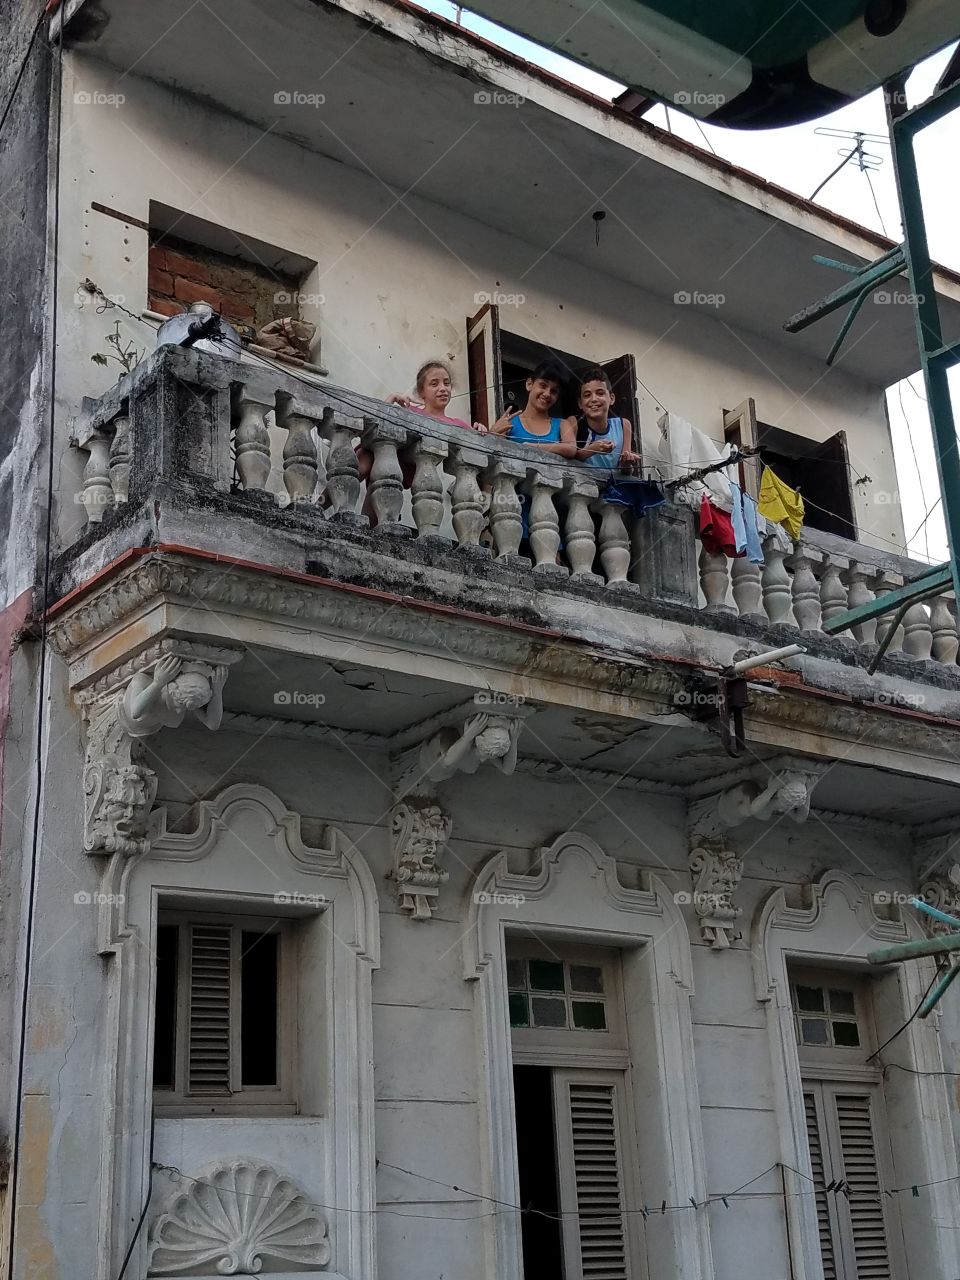 Children in Havana, Cuba